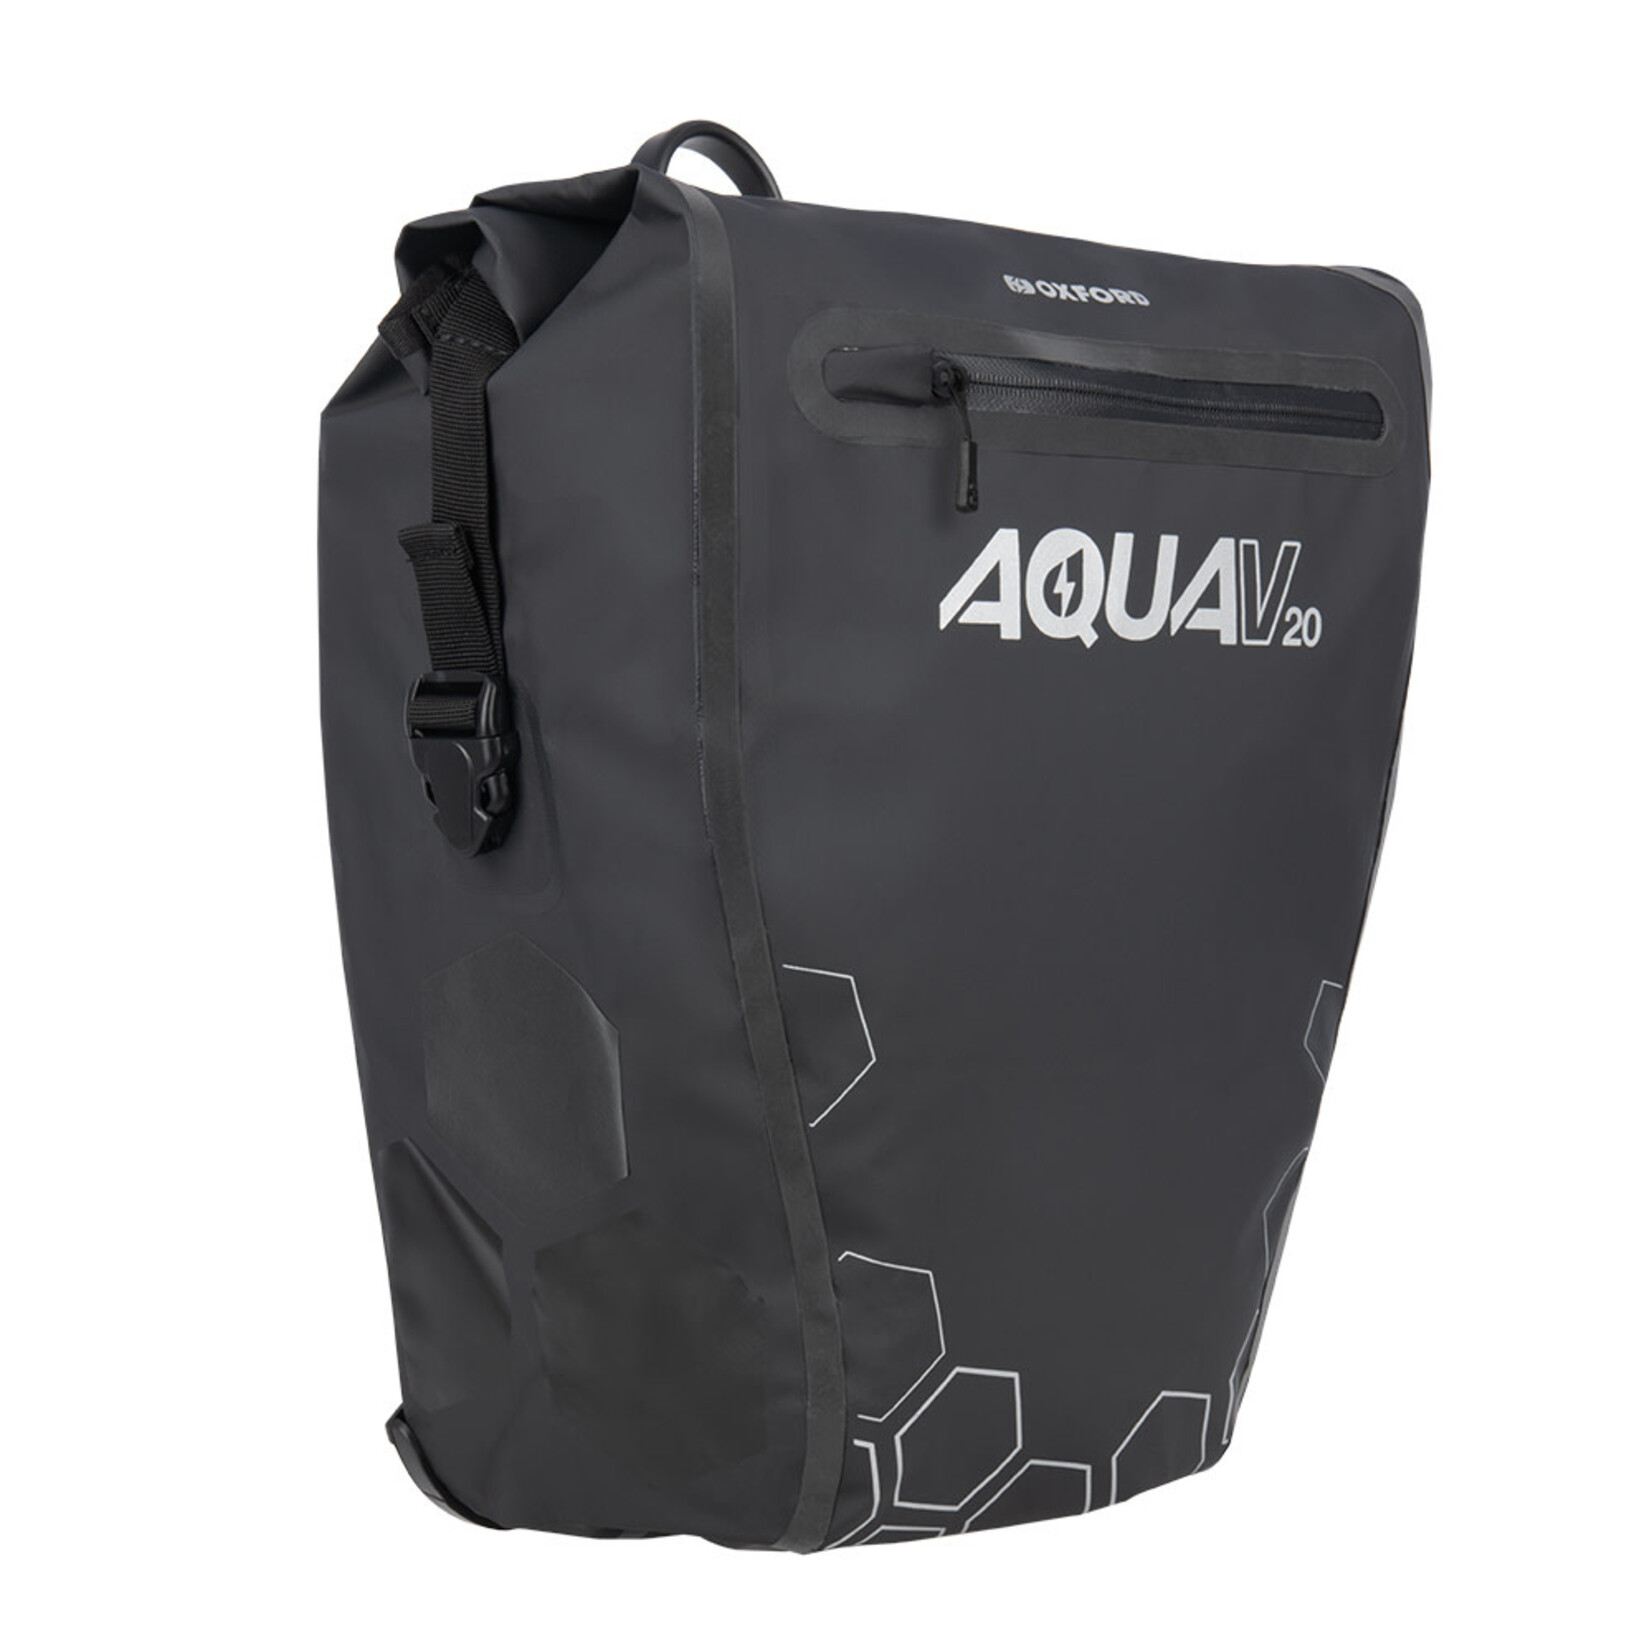 Oxford Oxford Aqua V 20 Single QR Pannier Bag Black